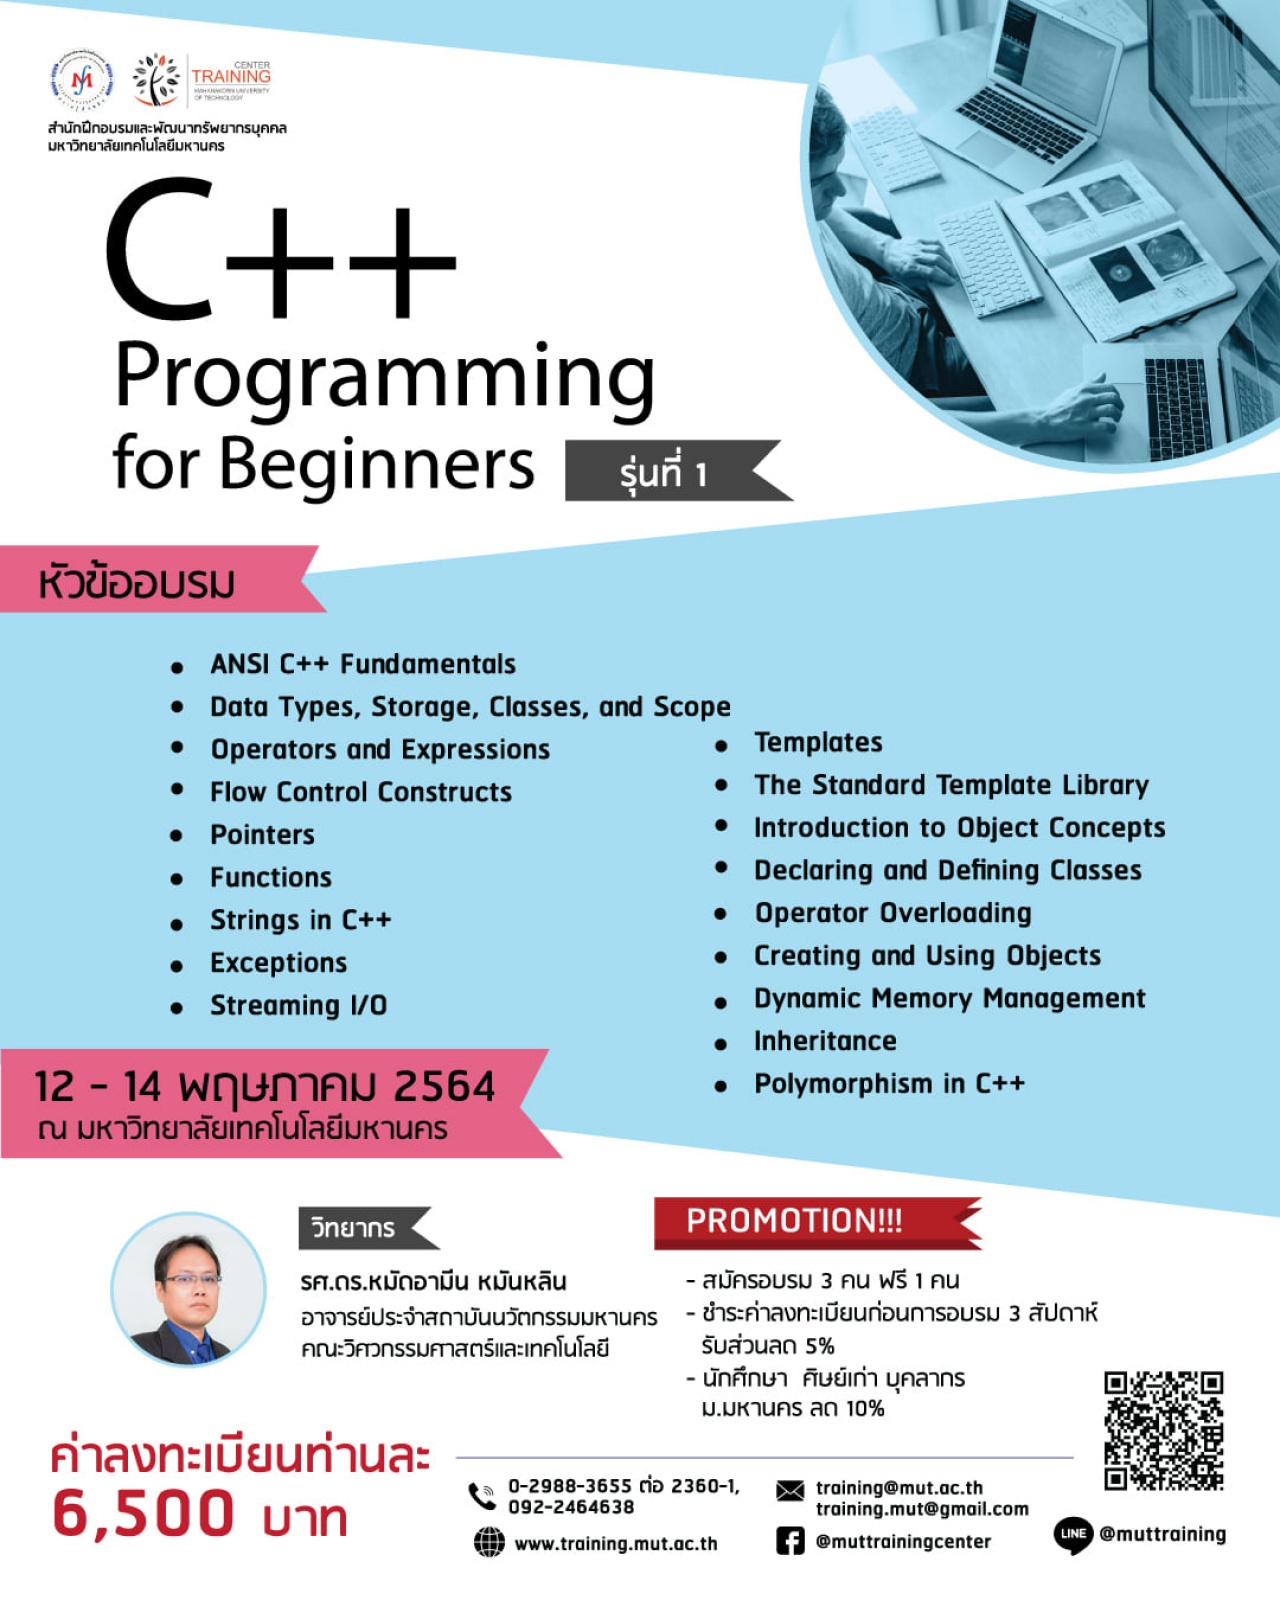 โครงการอบรม C++ Programming for Beginners รุ่นที่ 1